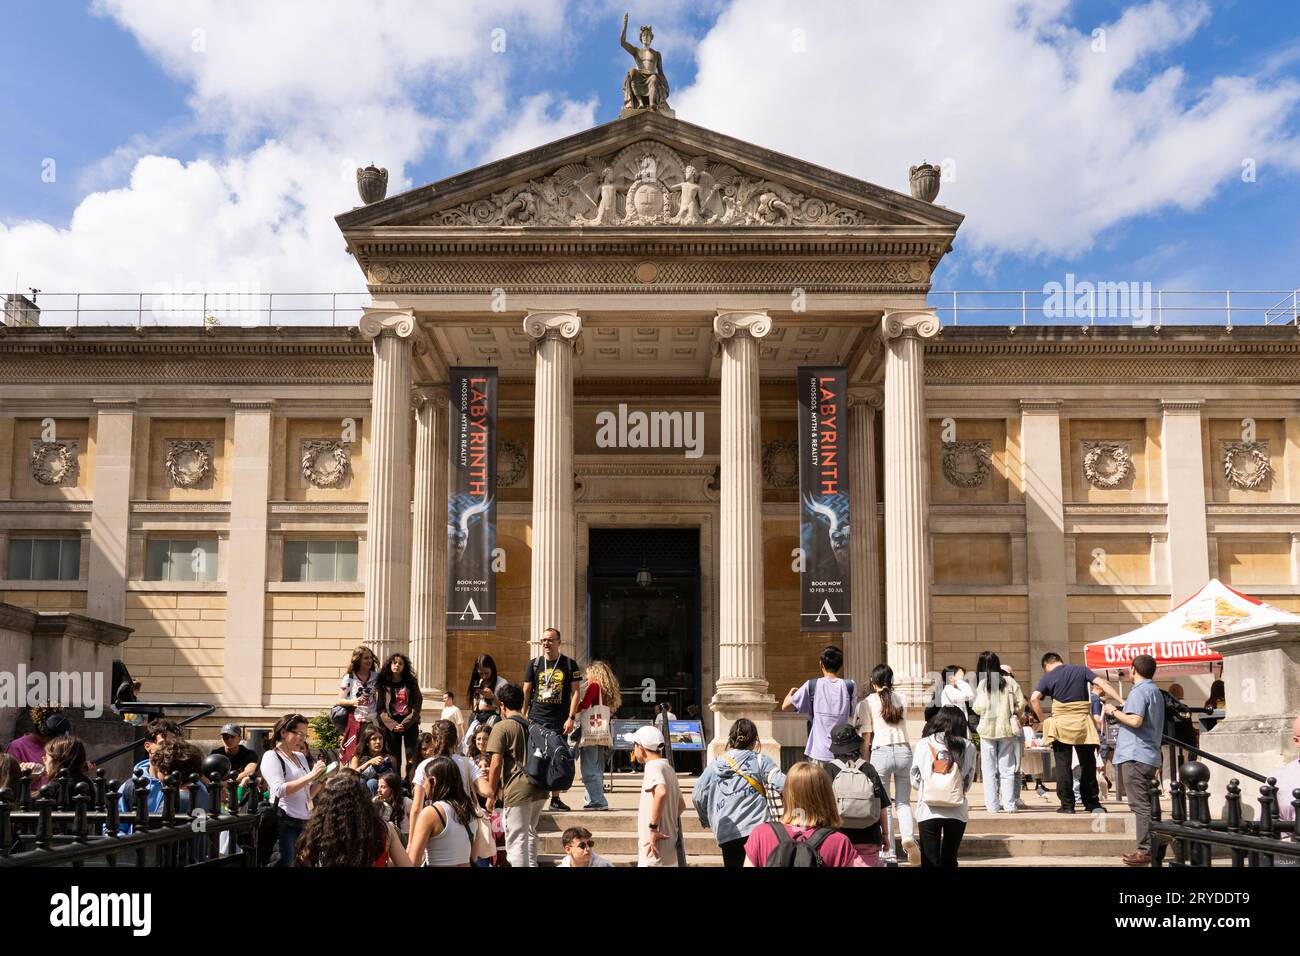 La façade avant du Oxford Ashmolean Museum. L’Ashmolean est le musée d’art et d’archéologie de l’Université d’Oxford, fondé en 1683. Angleterre Banque D'Images